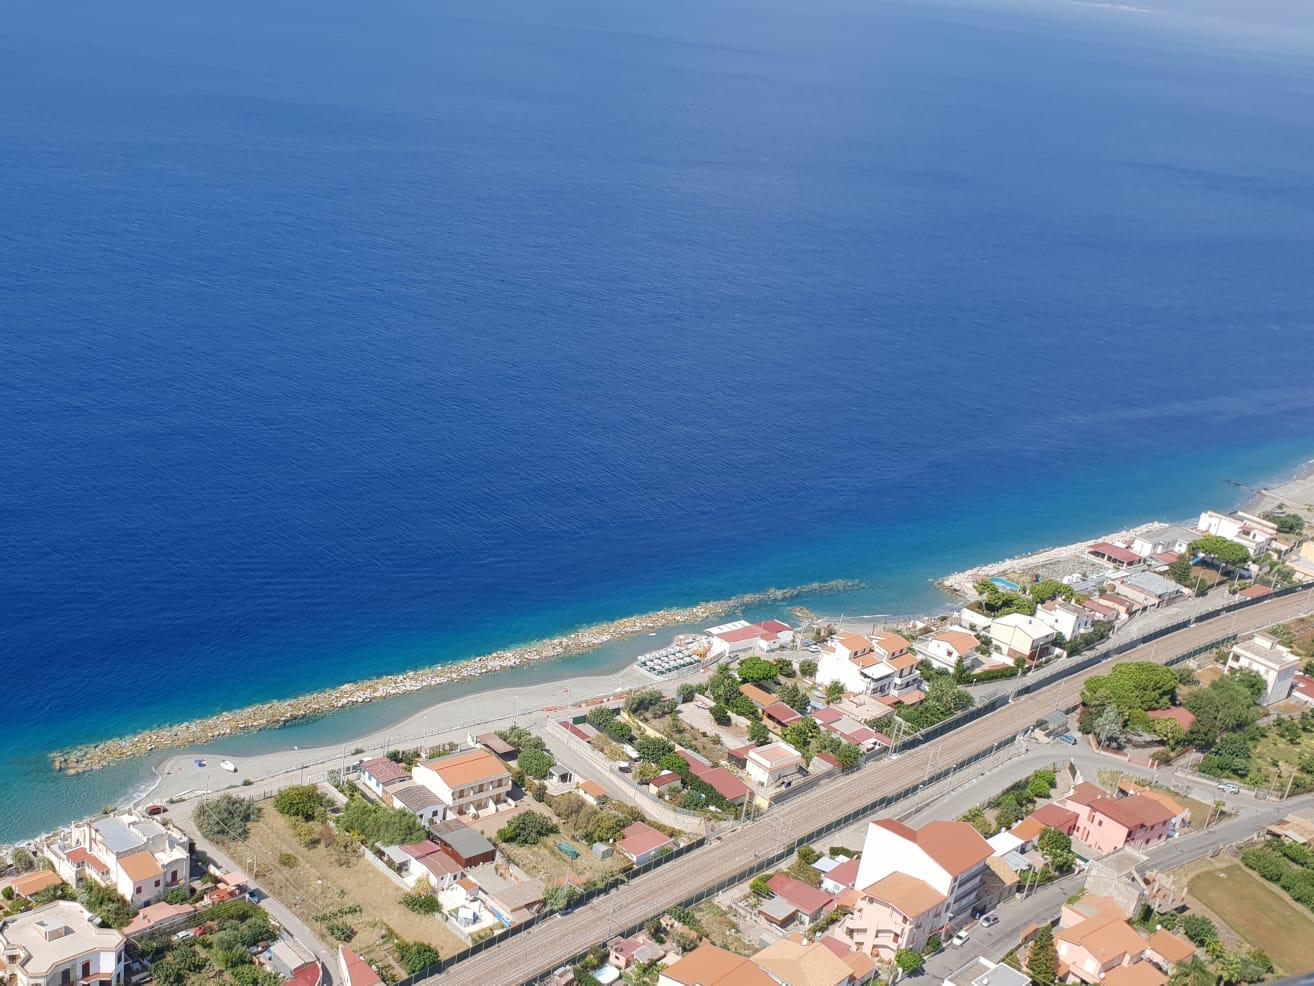 Zdjęcie Spiaggia Bocale I z powierzchnią niebieska woda